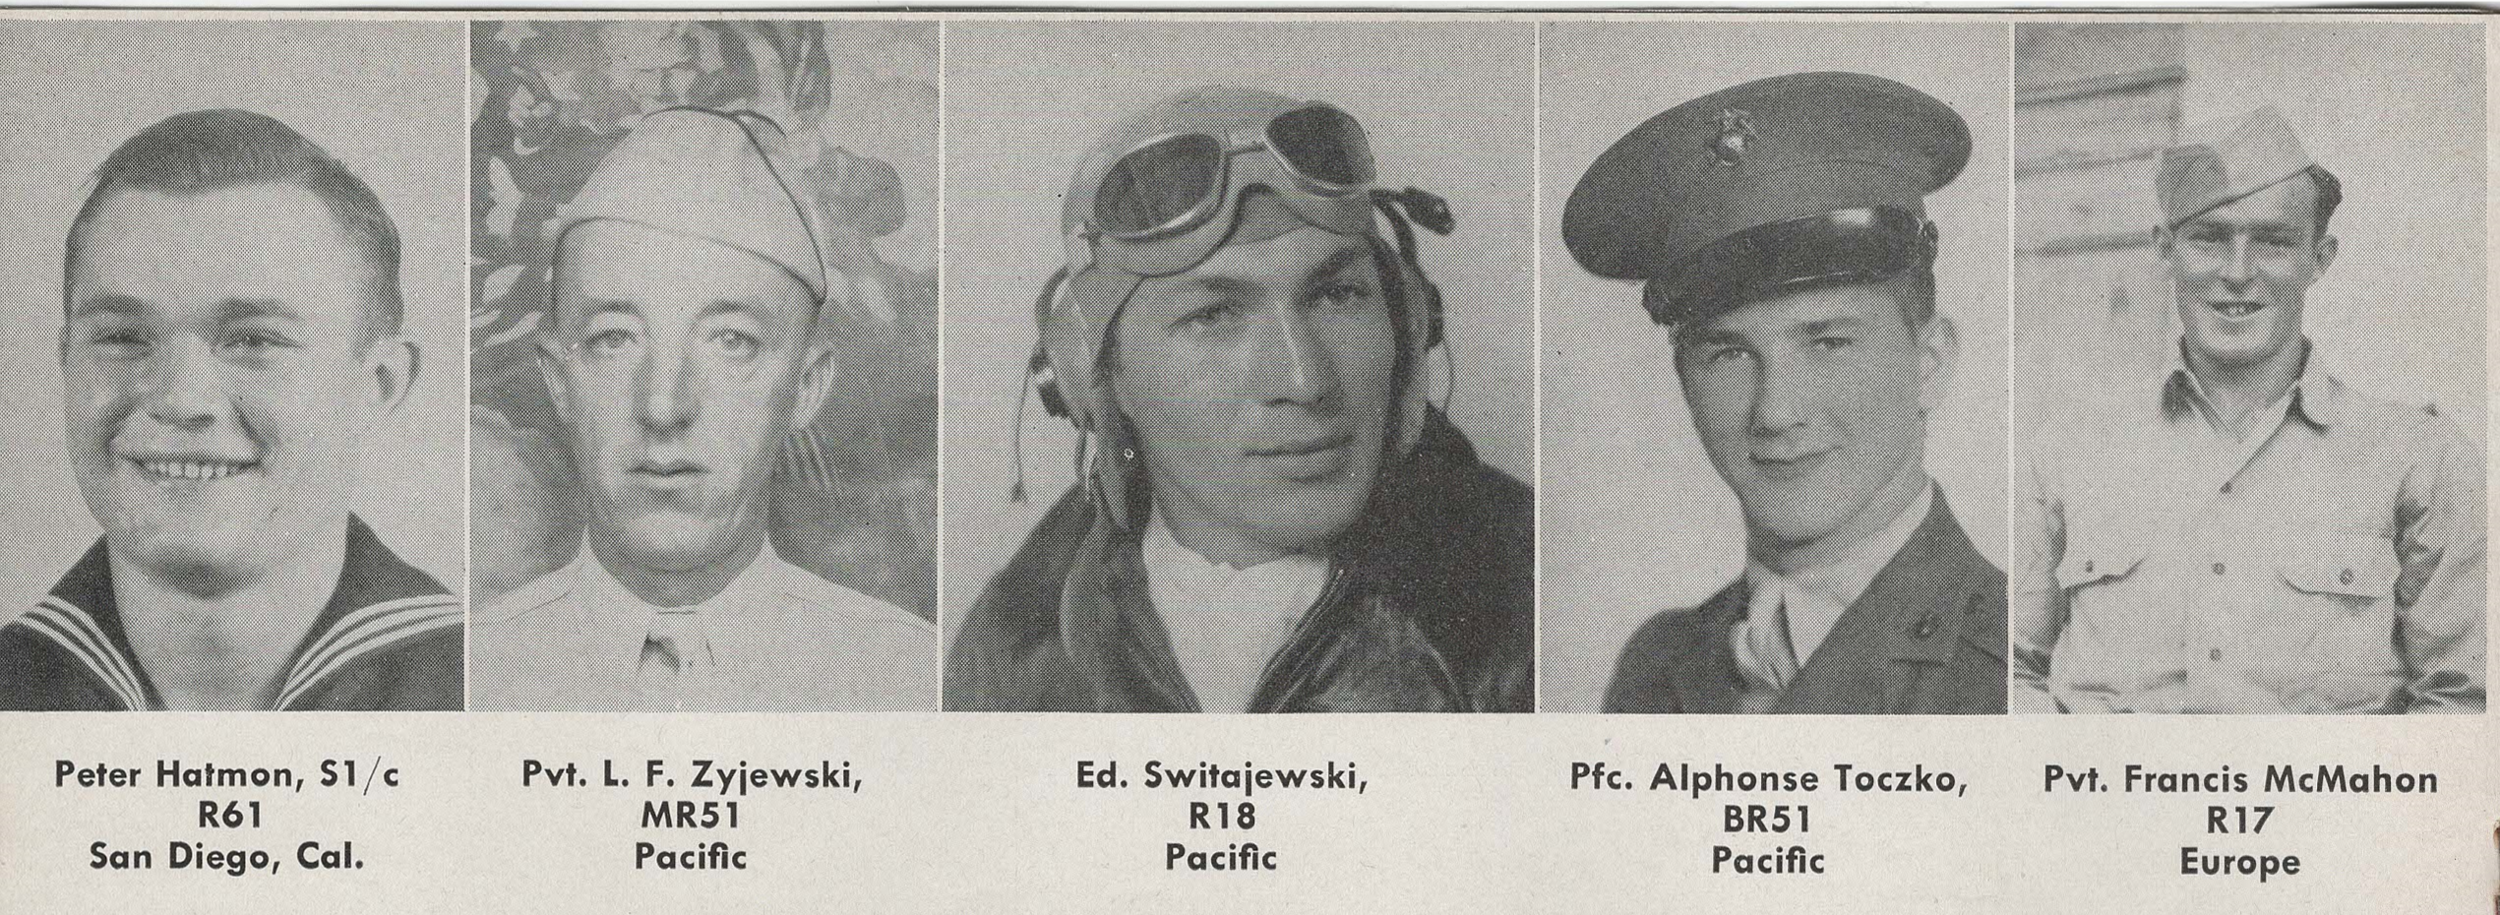 L-R: S1/c Peter Hatman, Pvt. L. F. Zyjewski, Ed. Switajewski, Pfc. Alphonse Toczko, Pvt. Francis McMahon